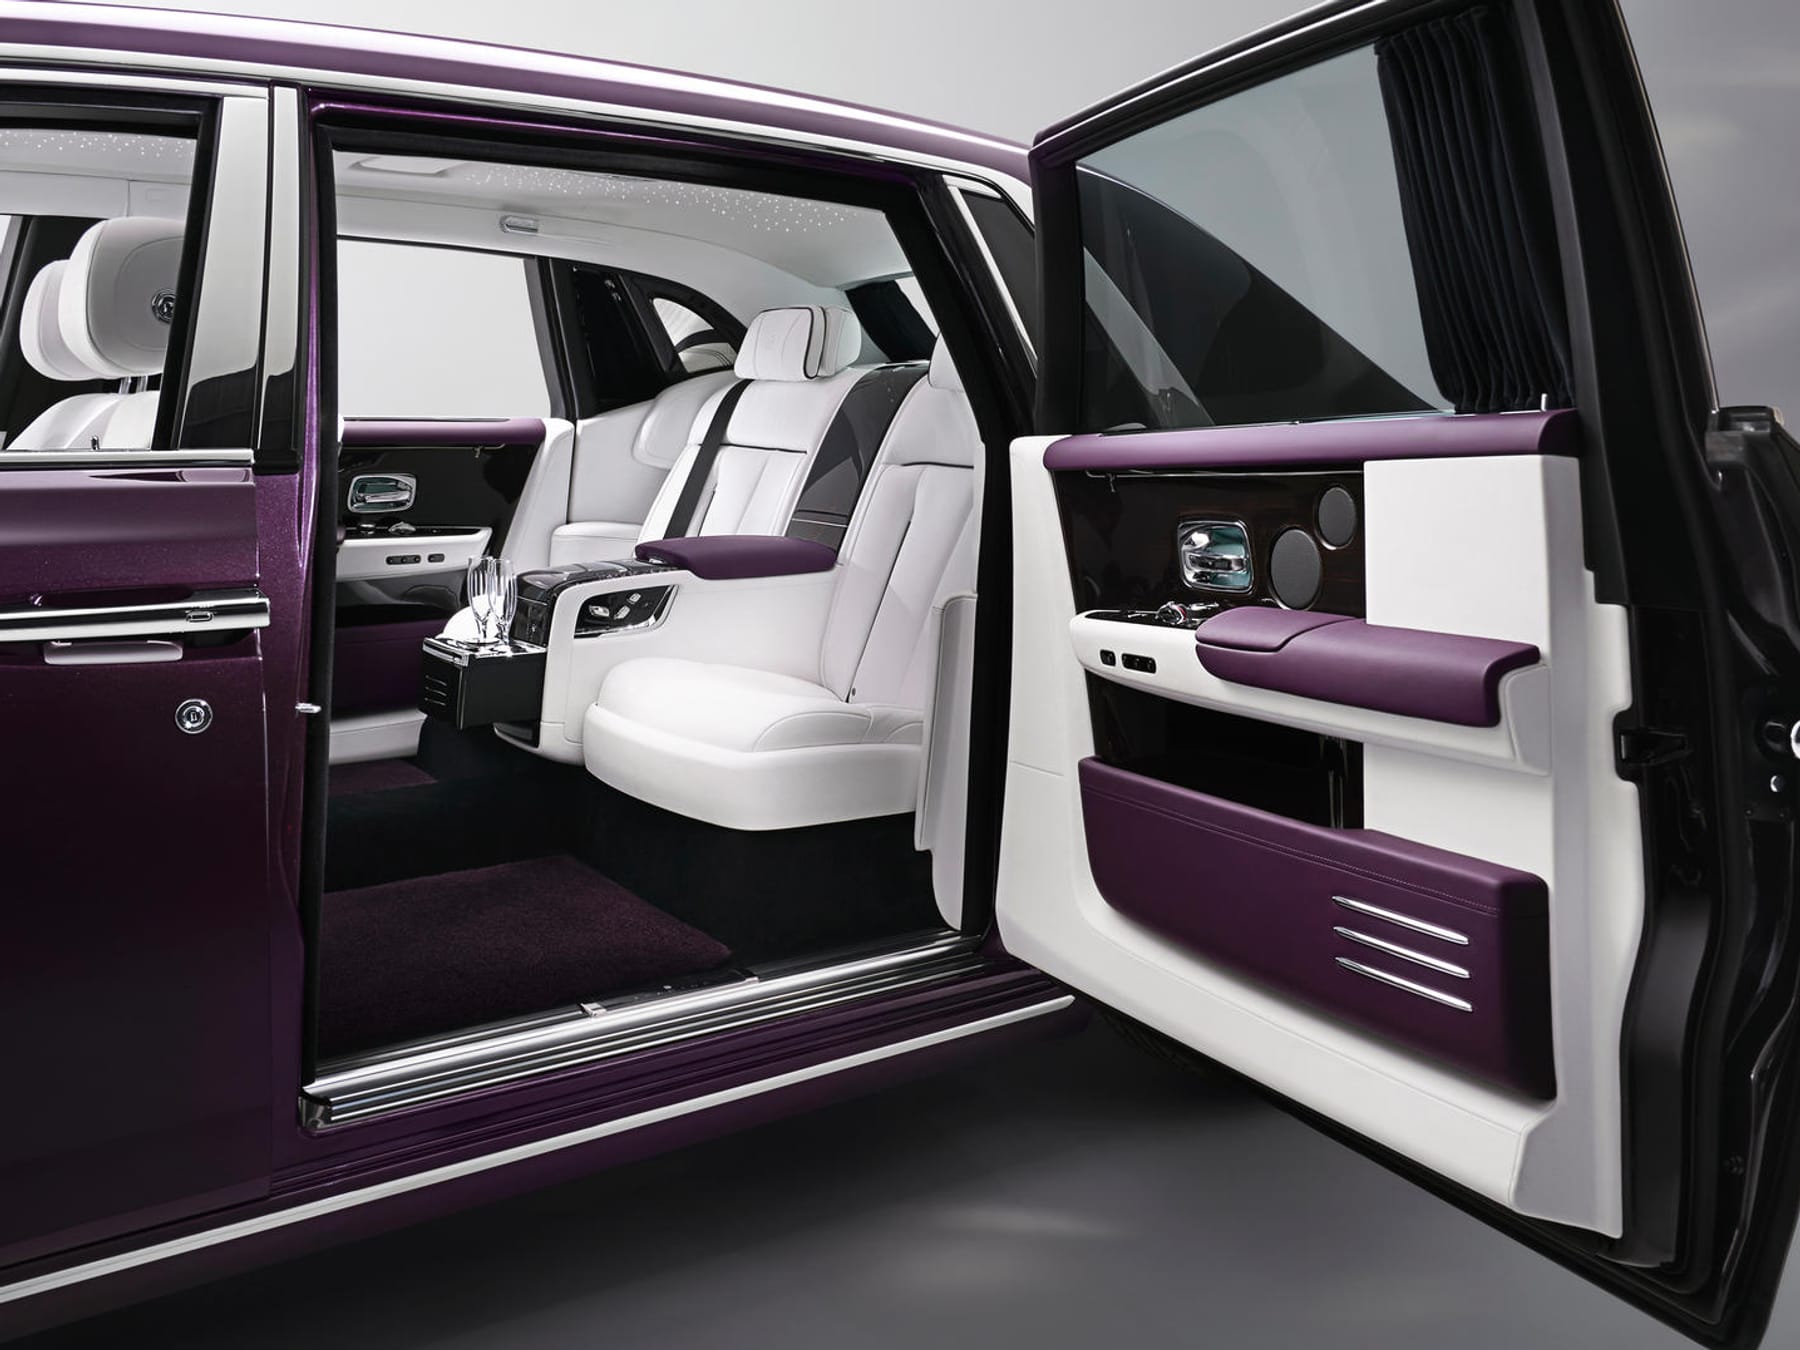 Mehr als ausreichend: Rolls-Royce präsentiert den Phantom VIII